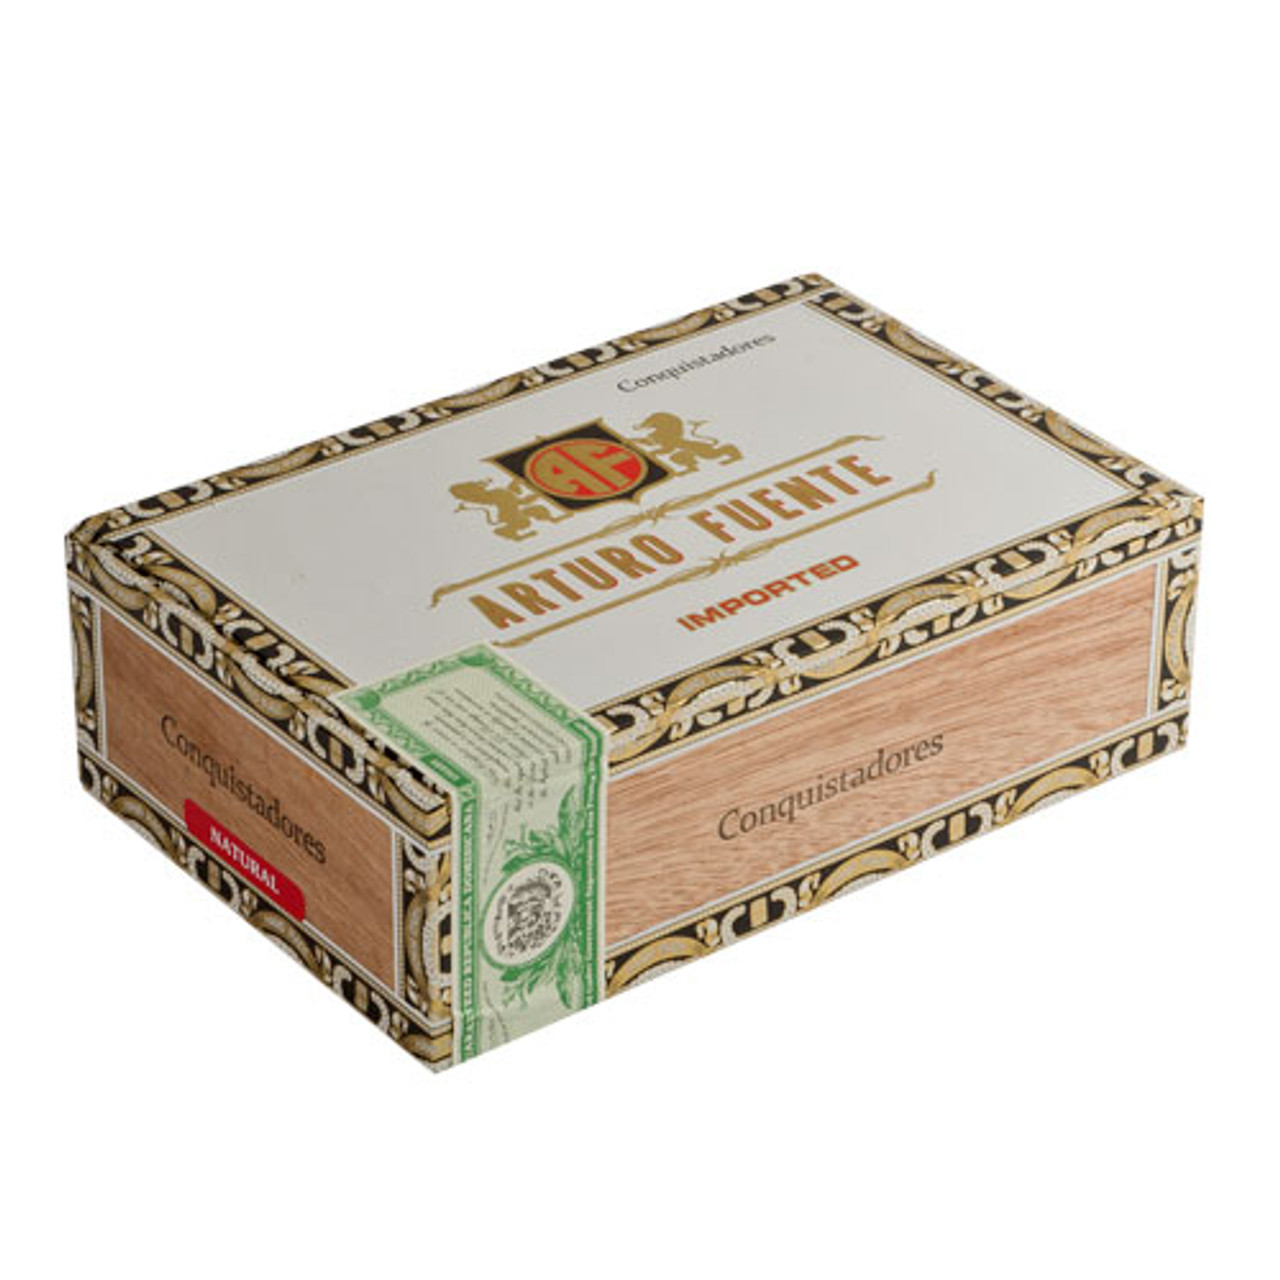 Arturo Fuente Especiales Conquistadores Cigars - 5.5 x 56 (Box of 30) *Box